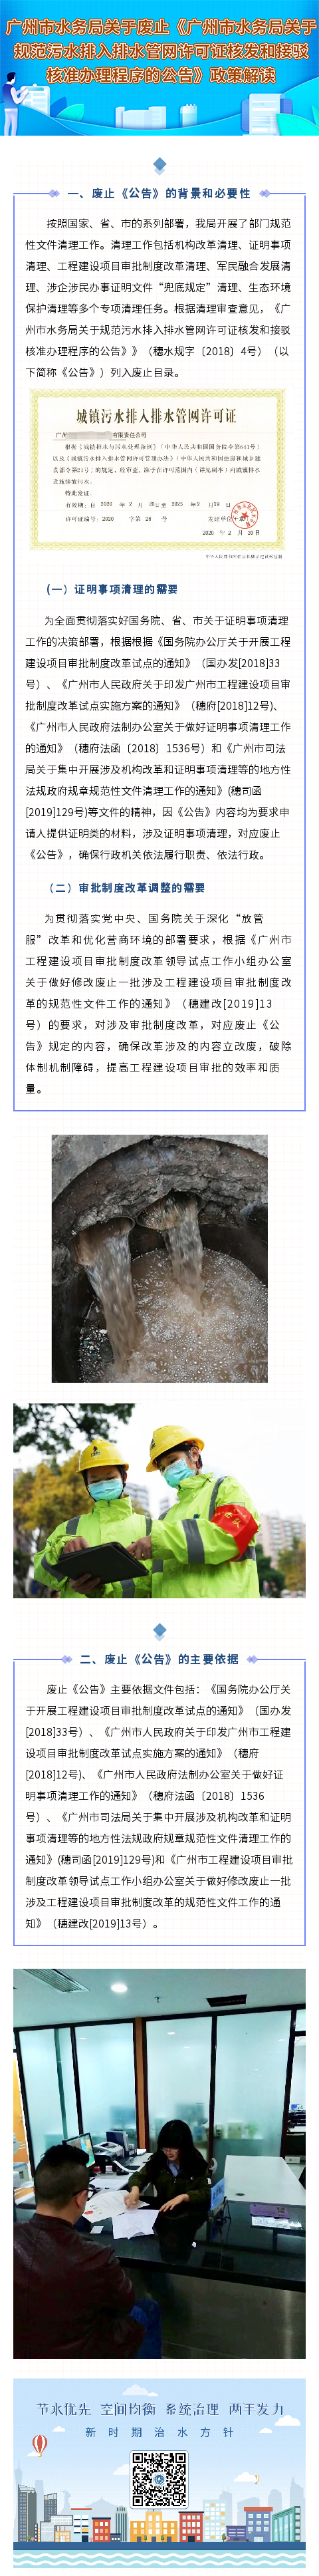 广州市水务局关于废止《广州市水务局关于规范污水排入排水管网许可证核发和接驳核准办理程序的公告》政策解读.jpg